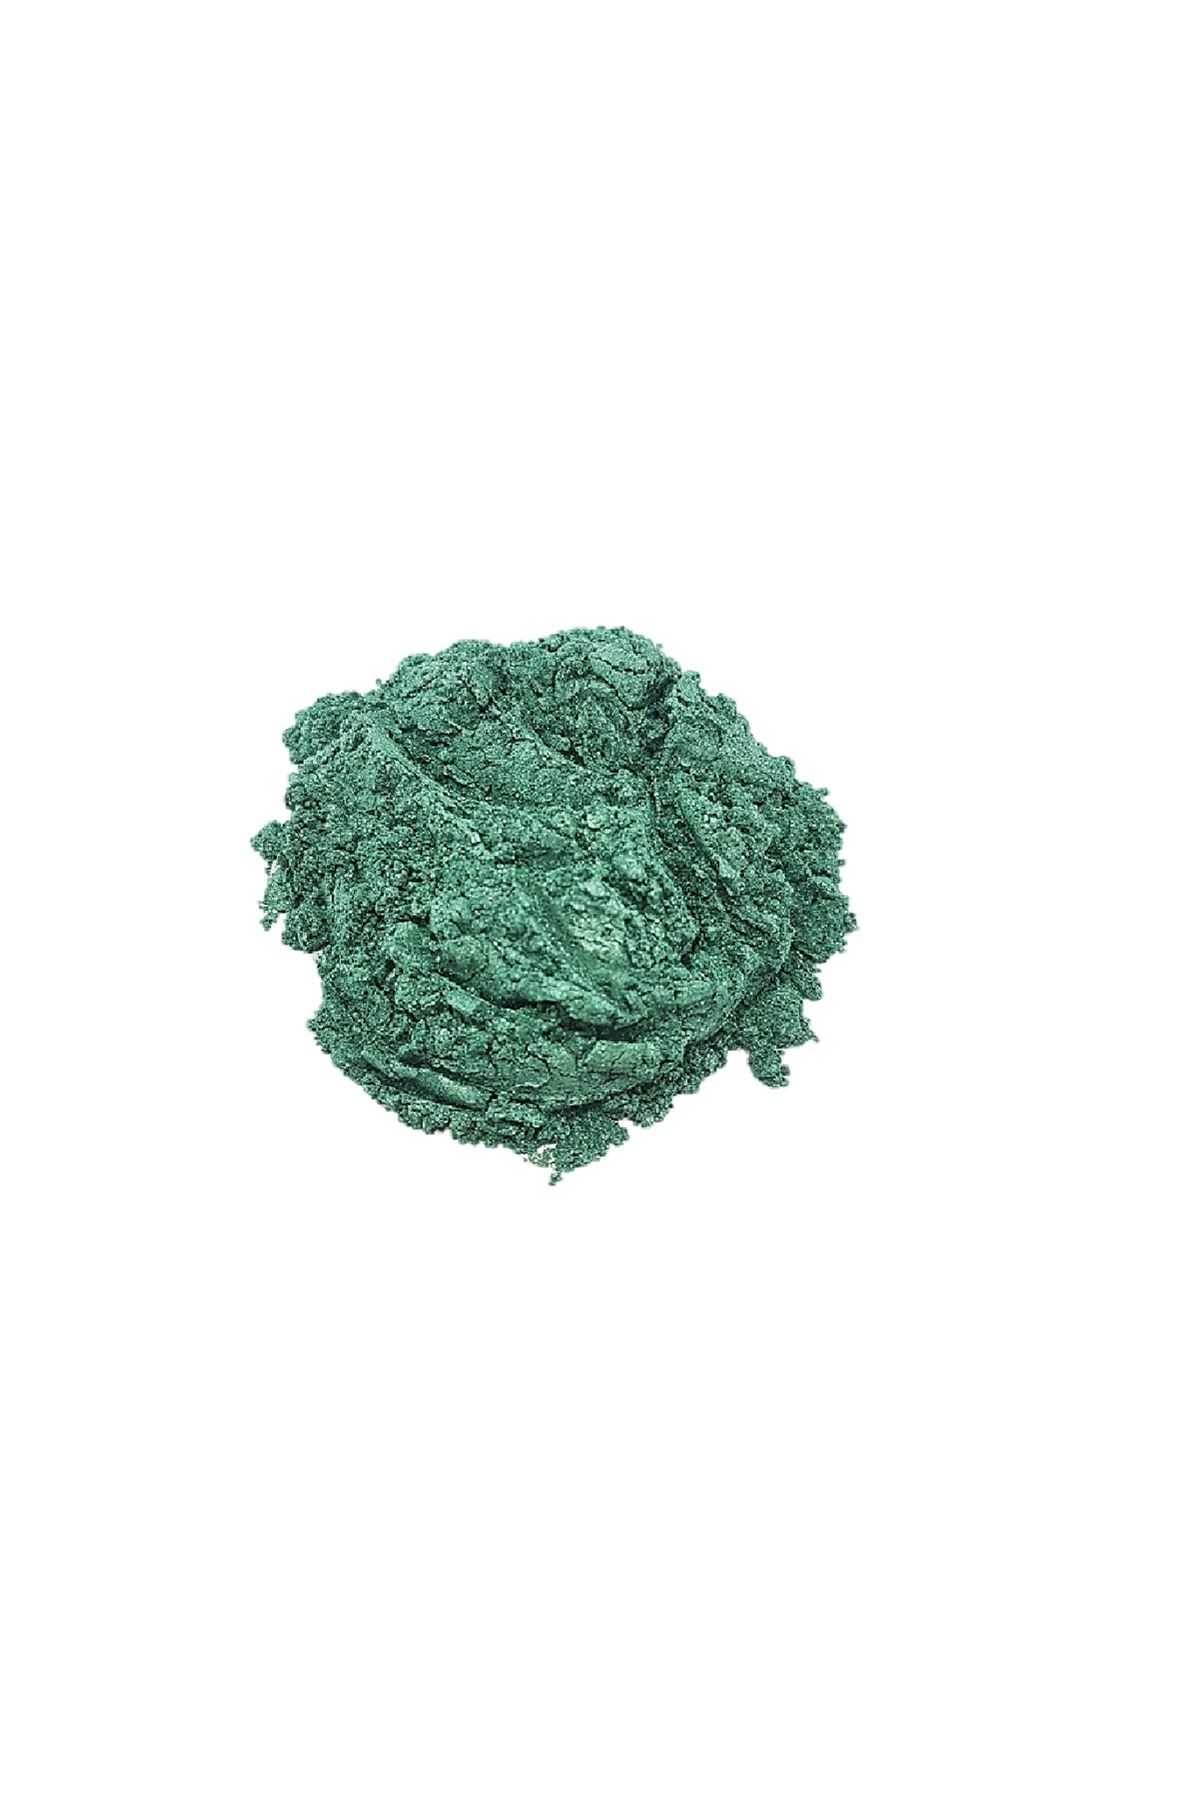 Brtr 10 Gr Emerald Epoksi Metalik Toz Pigment(Zümrüt Yeşili)